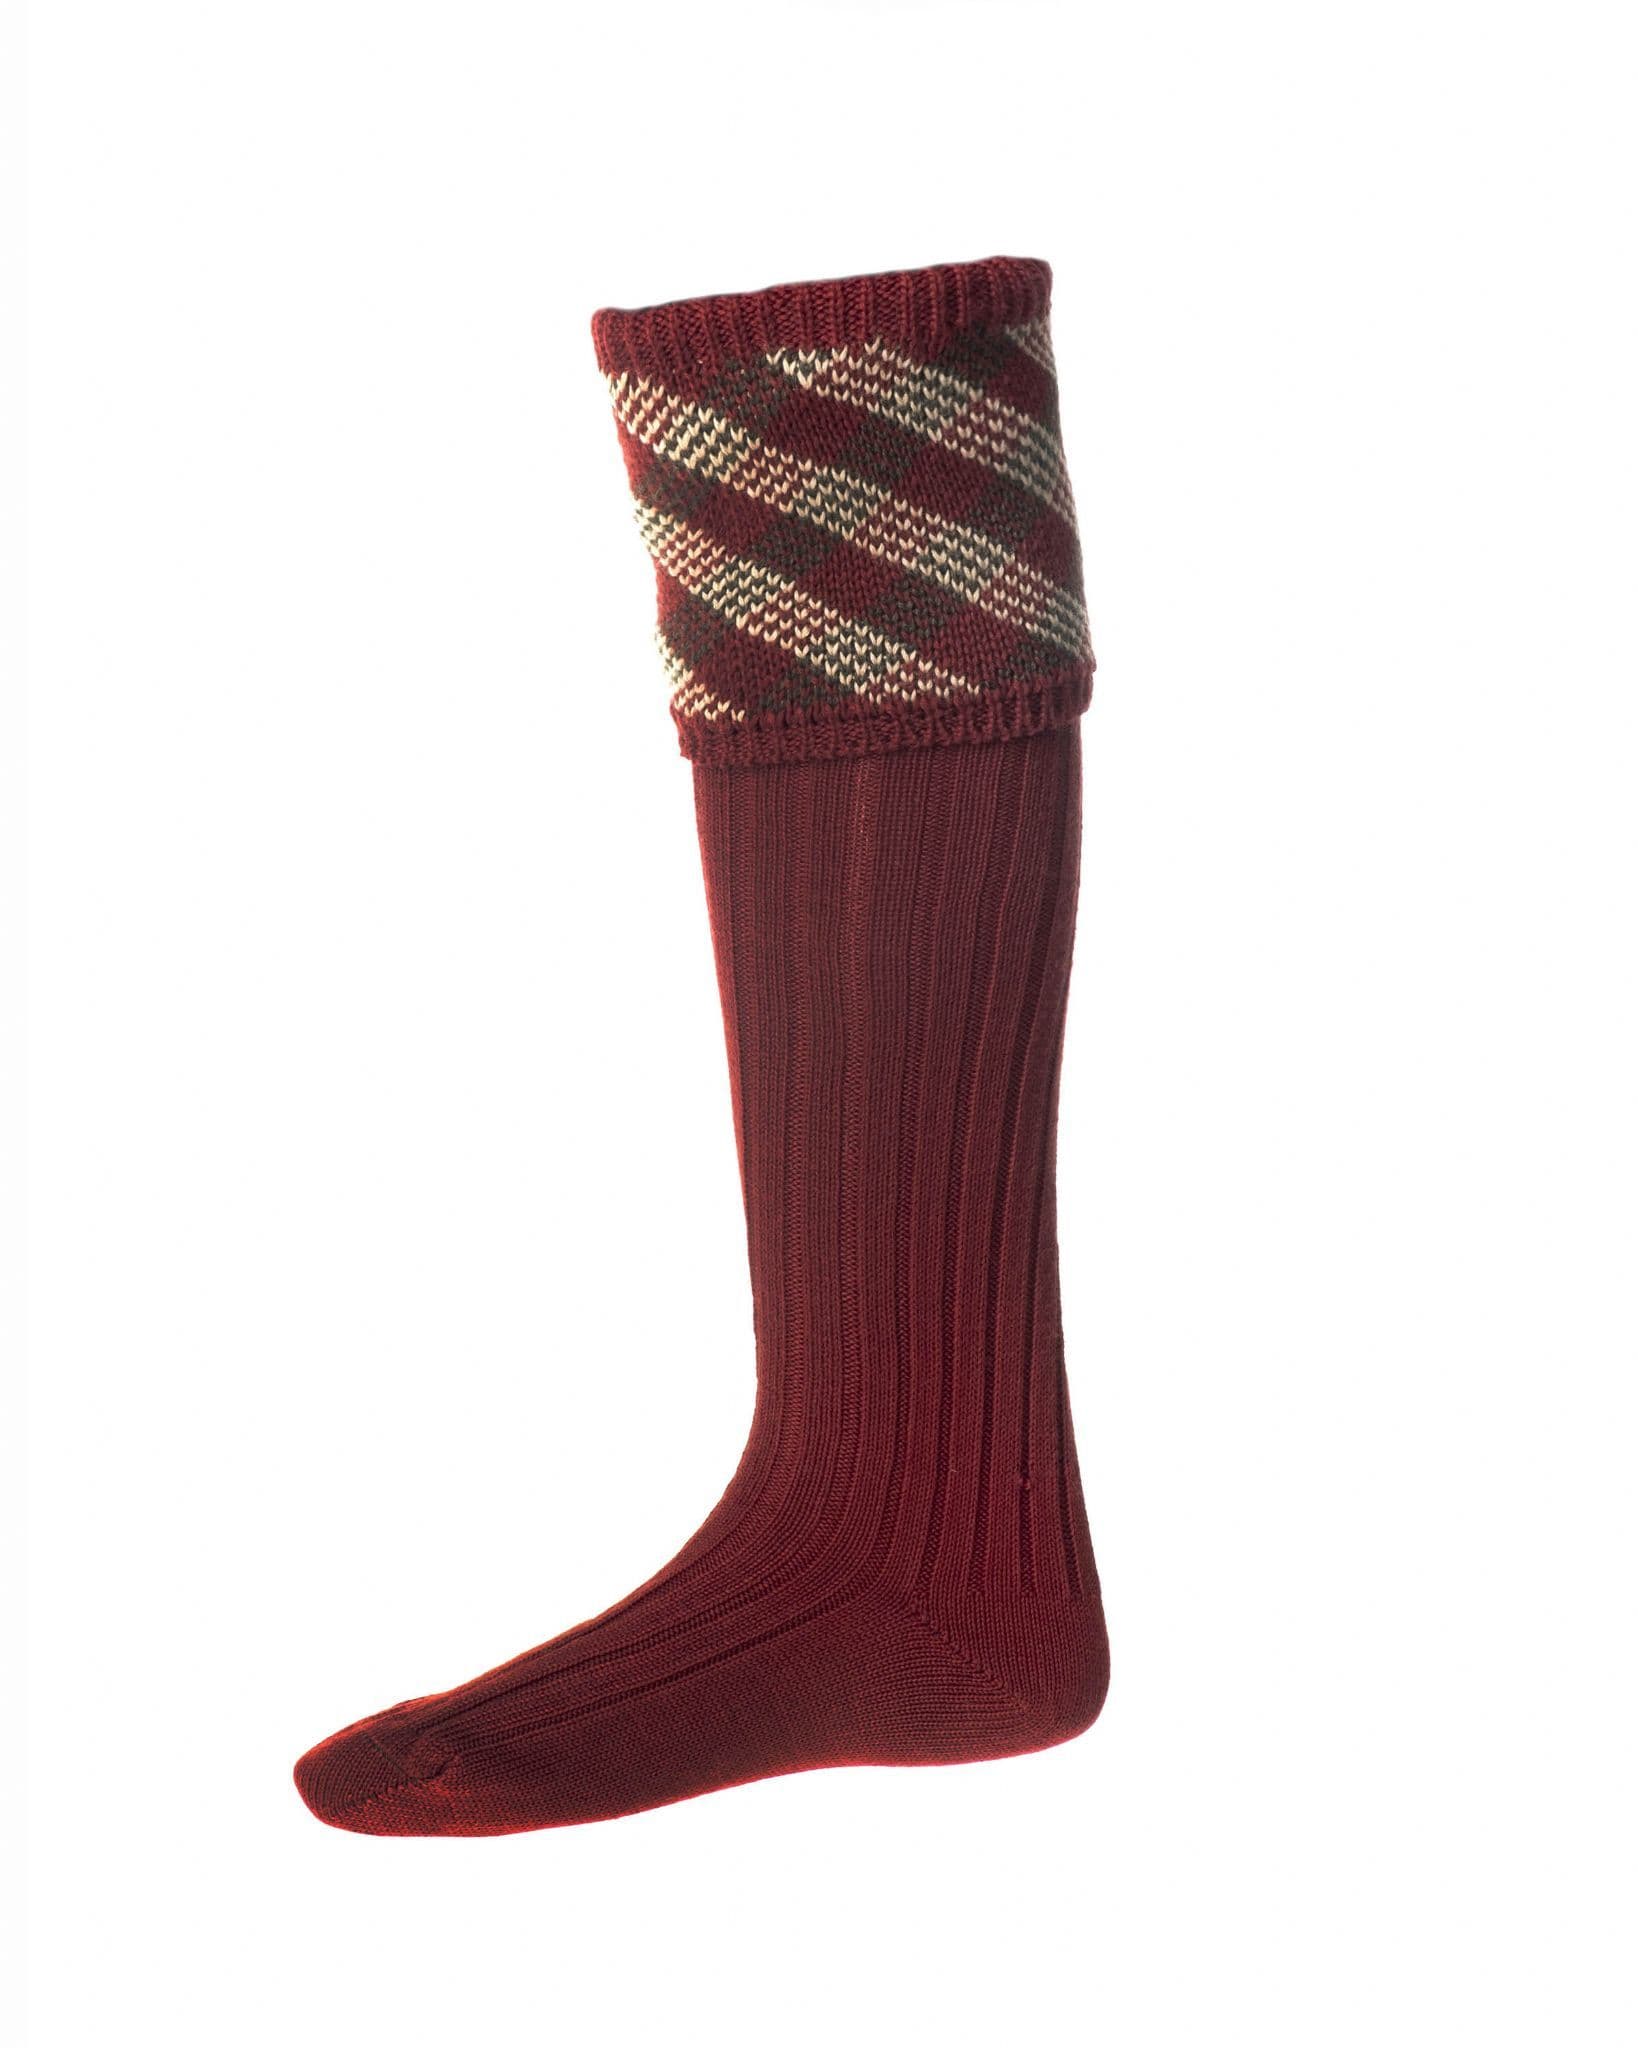 House Of Cheviot Men's Granton Socks - Brick Red